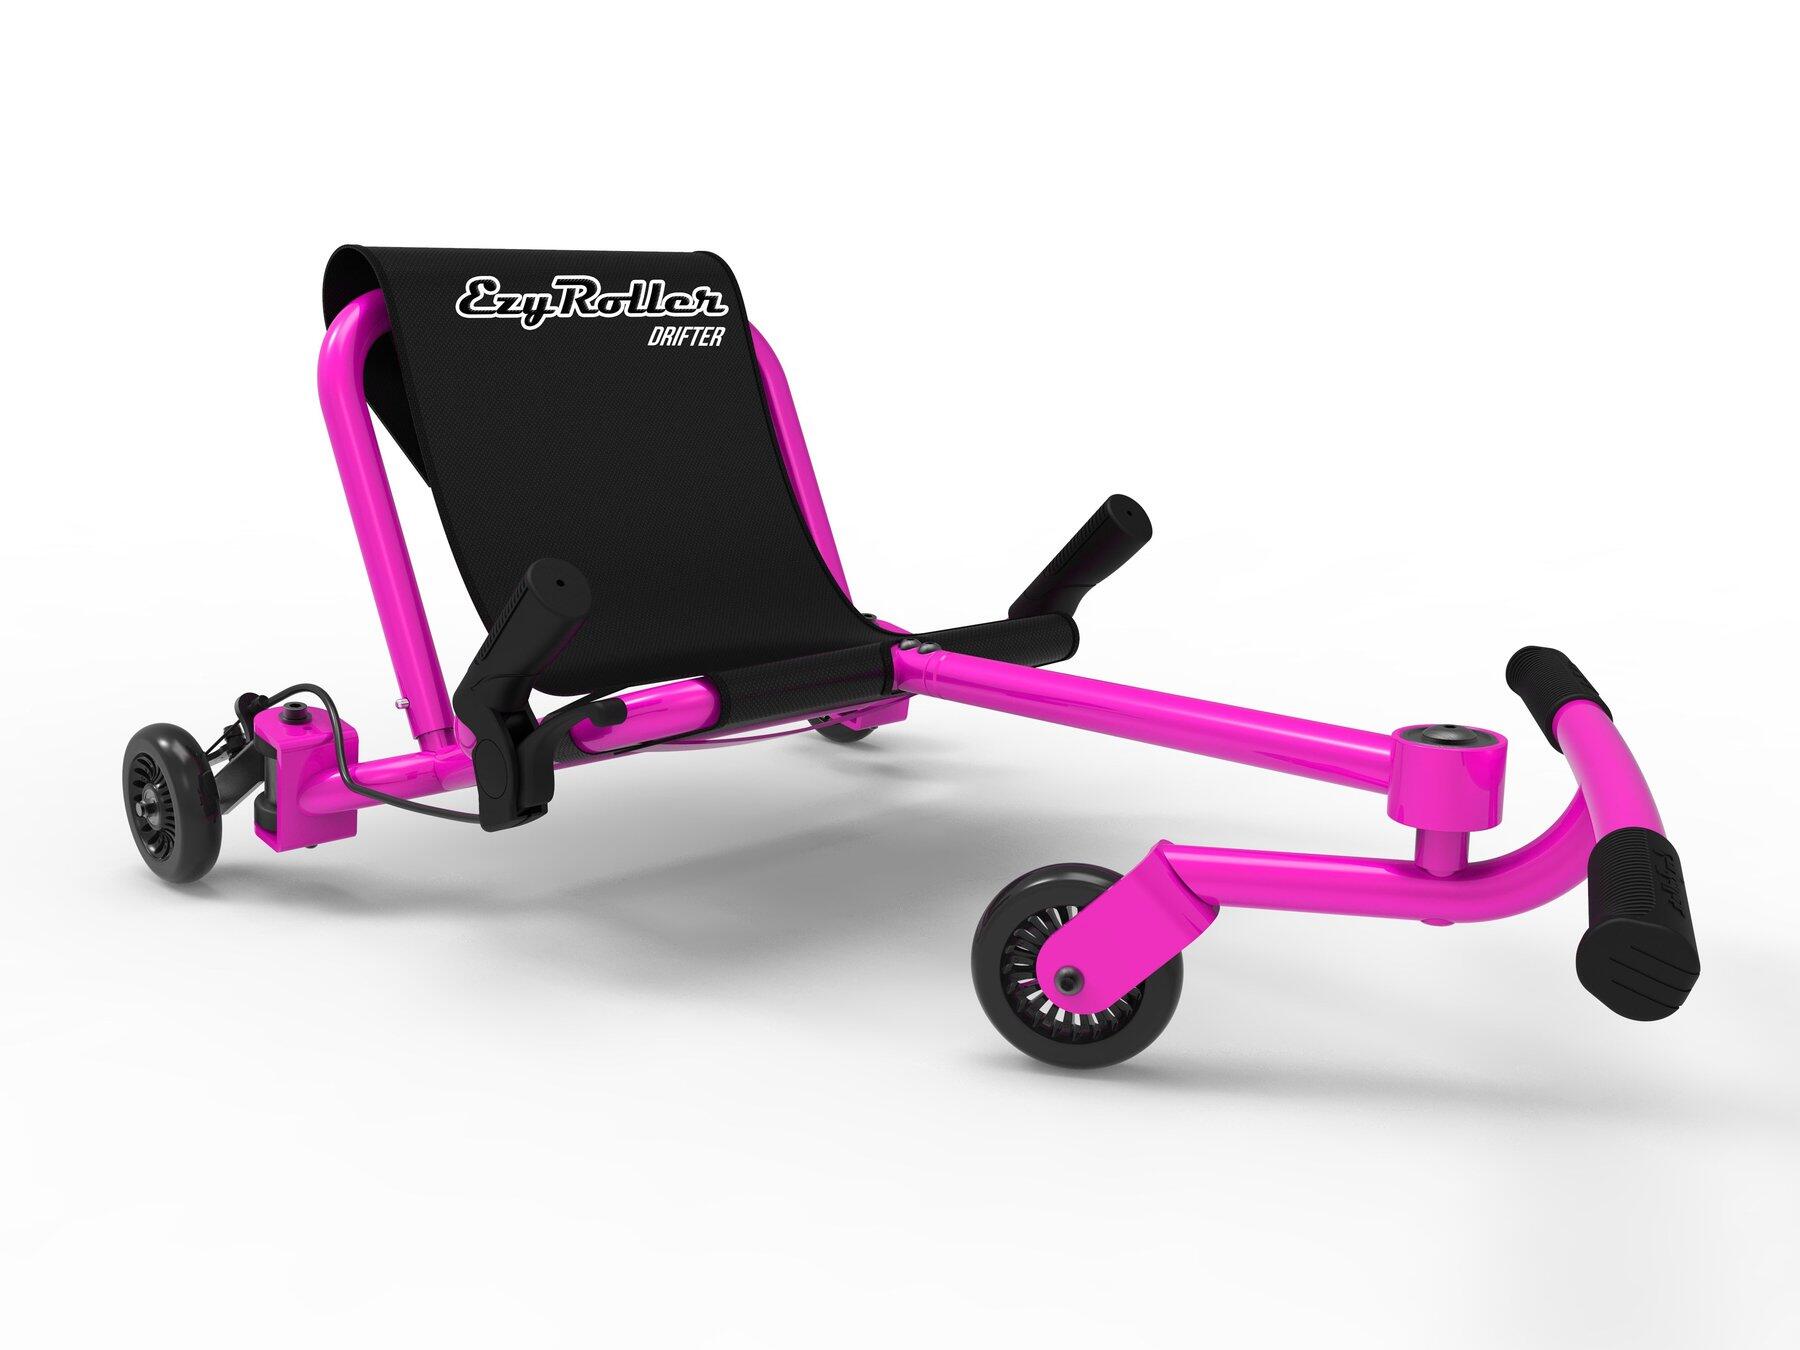 Ezy Roller DRIFTER Kart Trike Weave Ride On - Pink 1/5